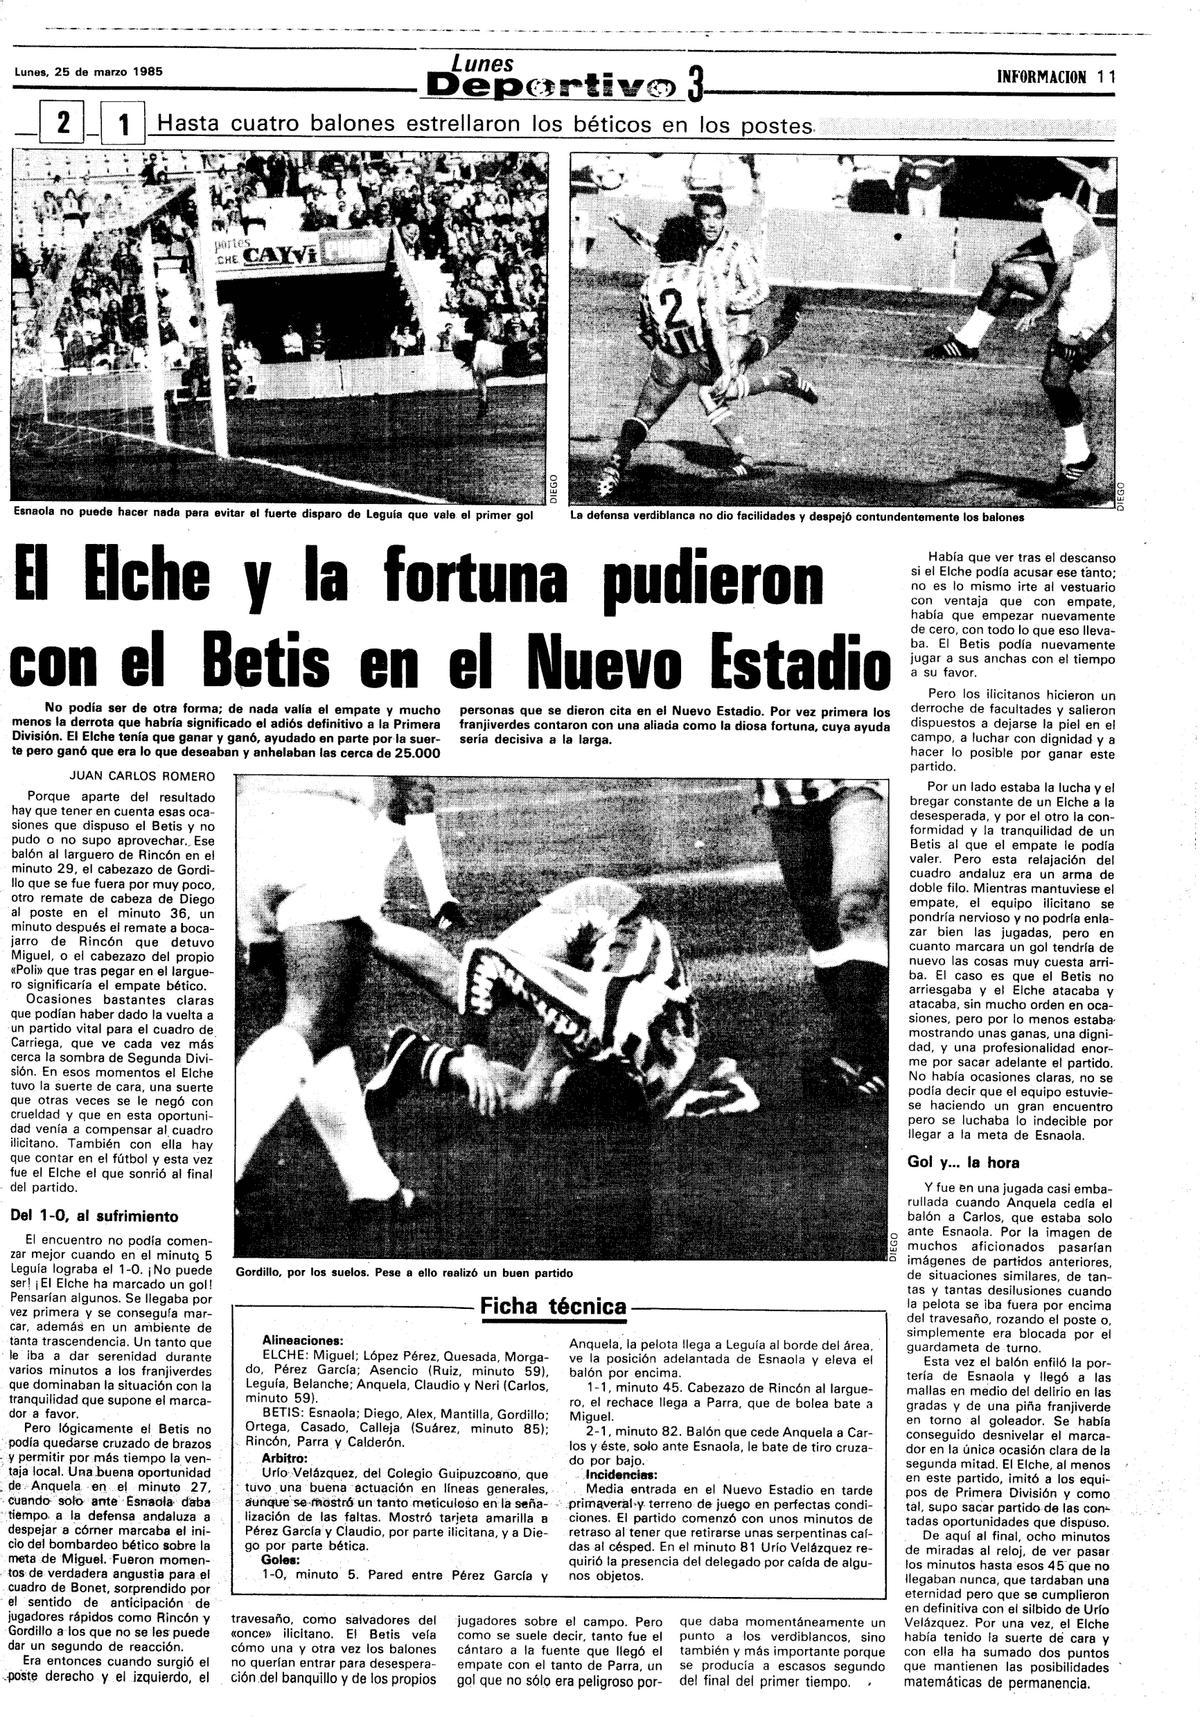 Crónica de INFORMACIÓN del partido entre Elche y Betis de 1985